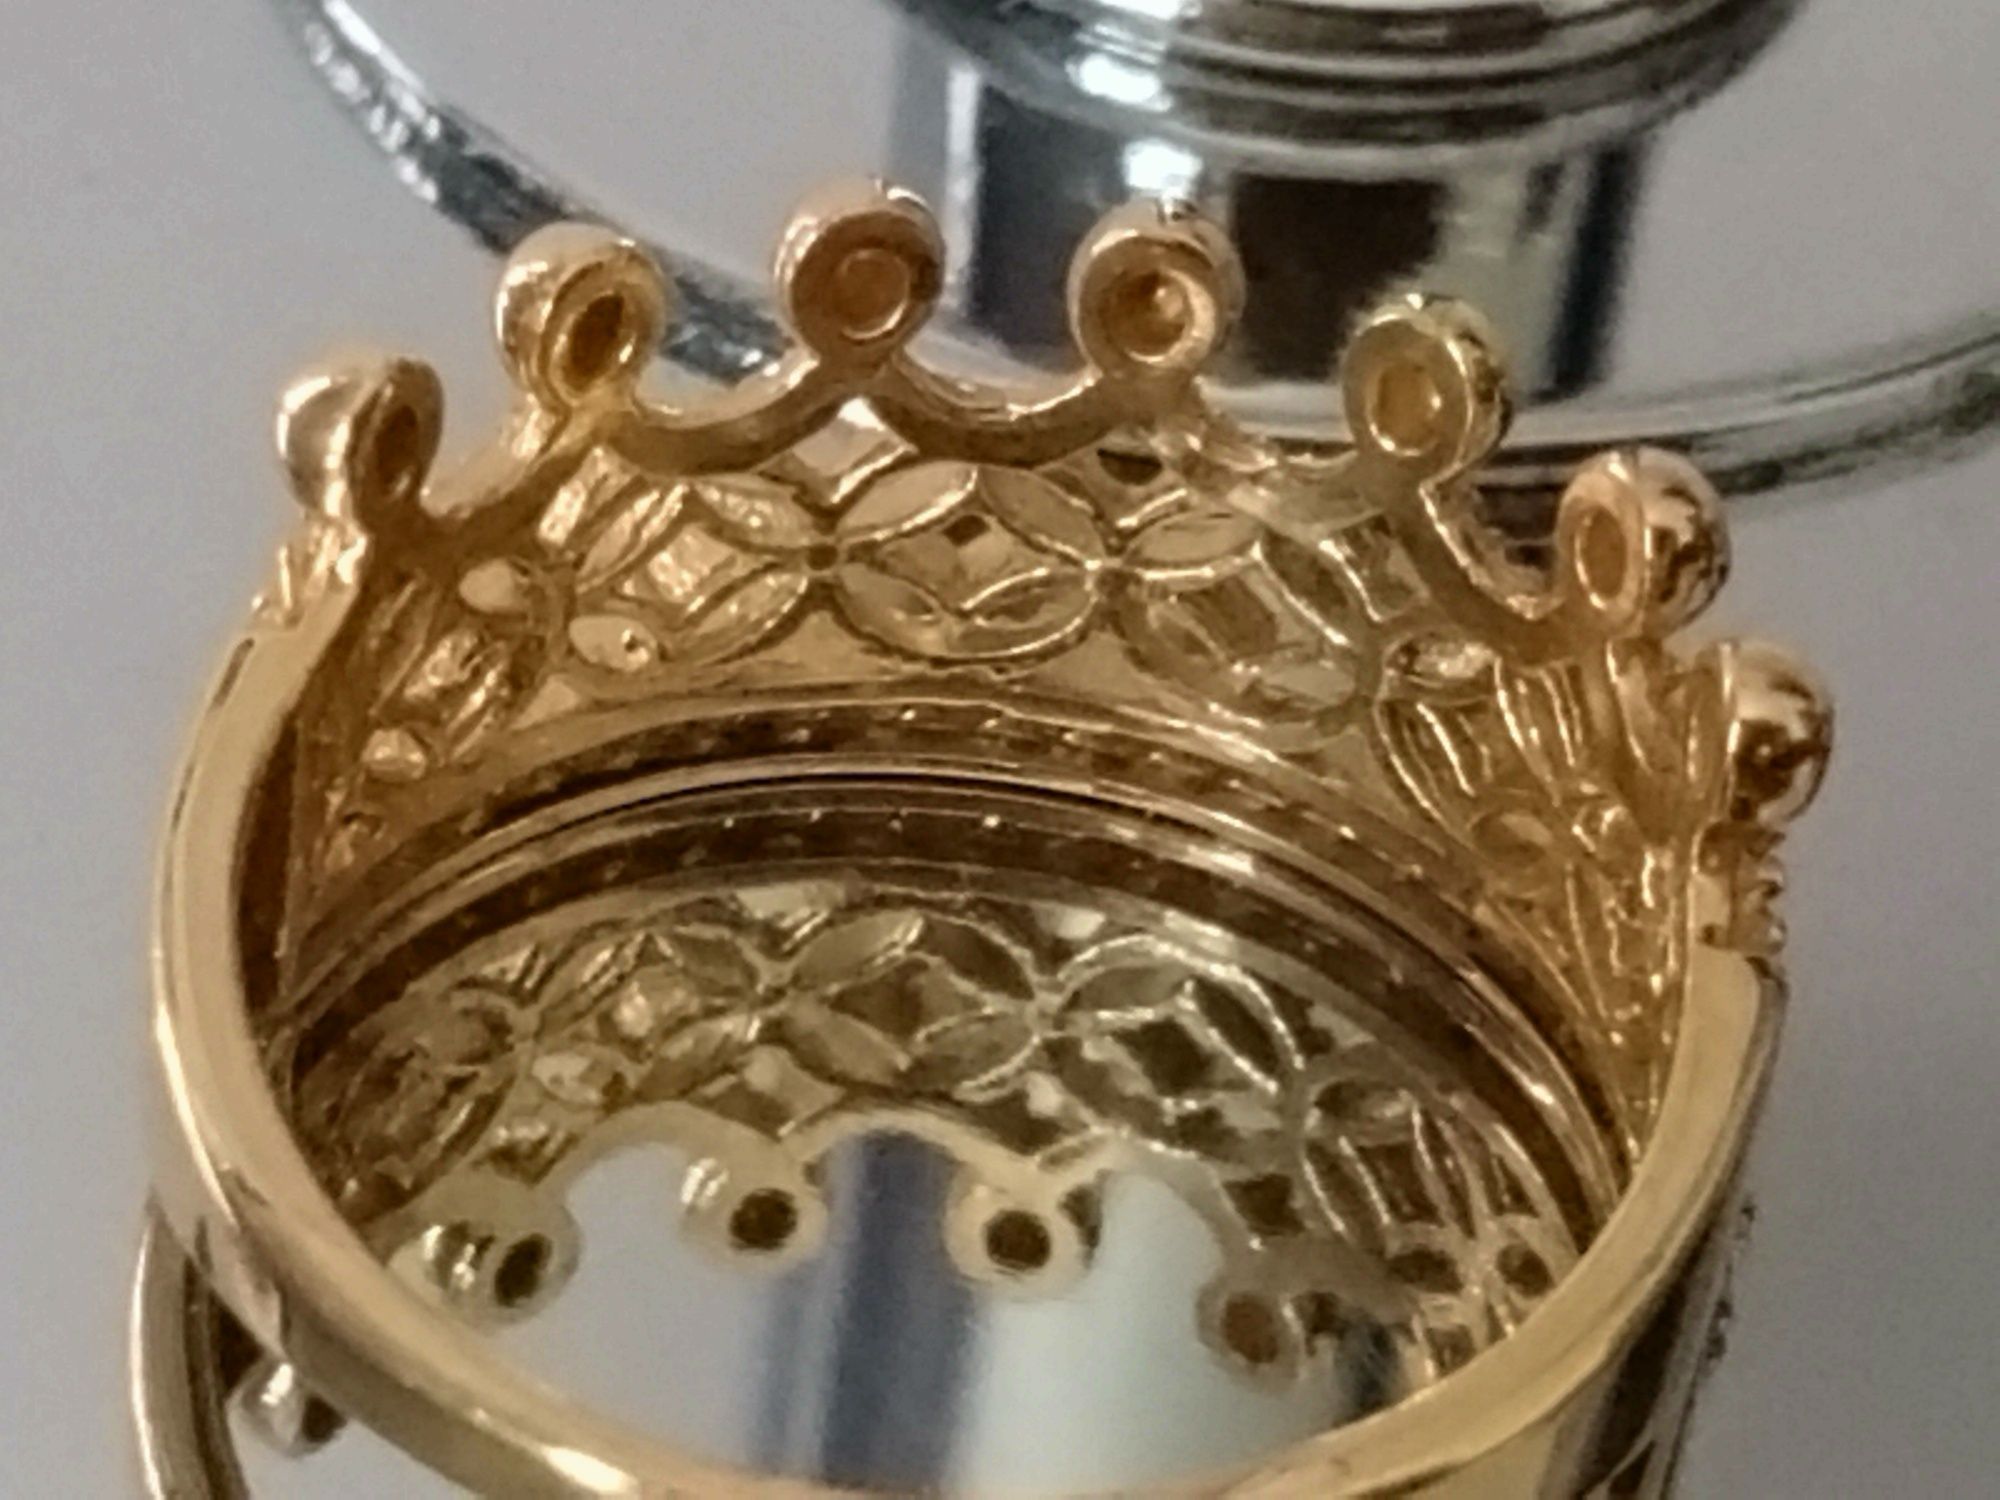 Piękny złoty pierścionek korona.